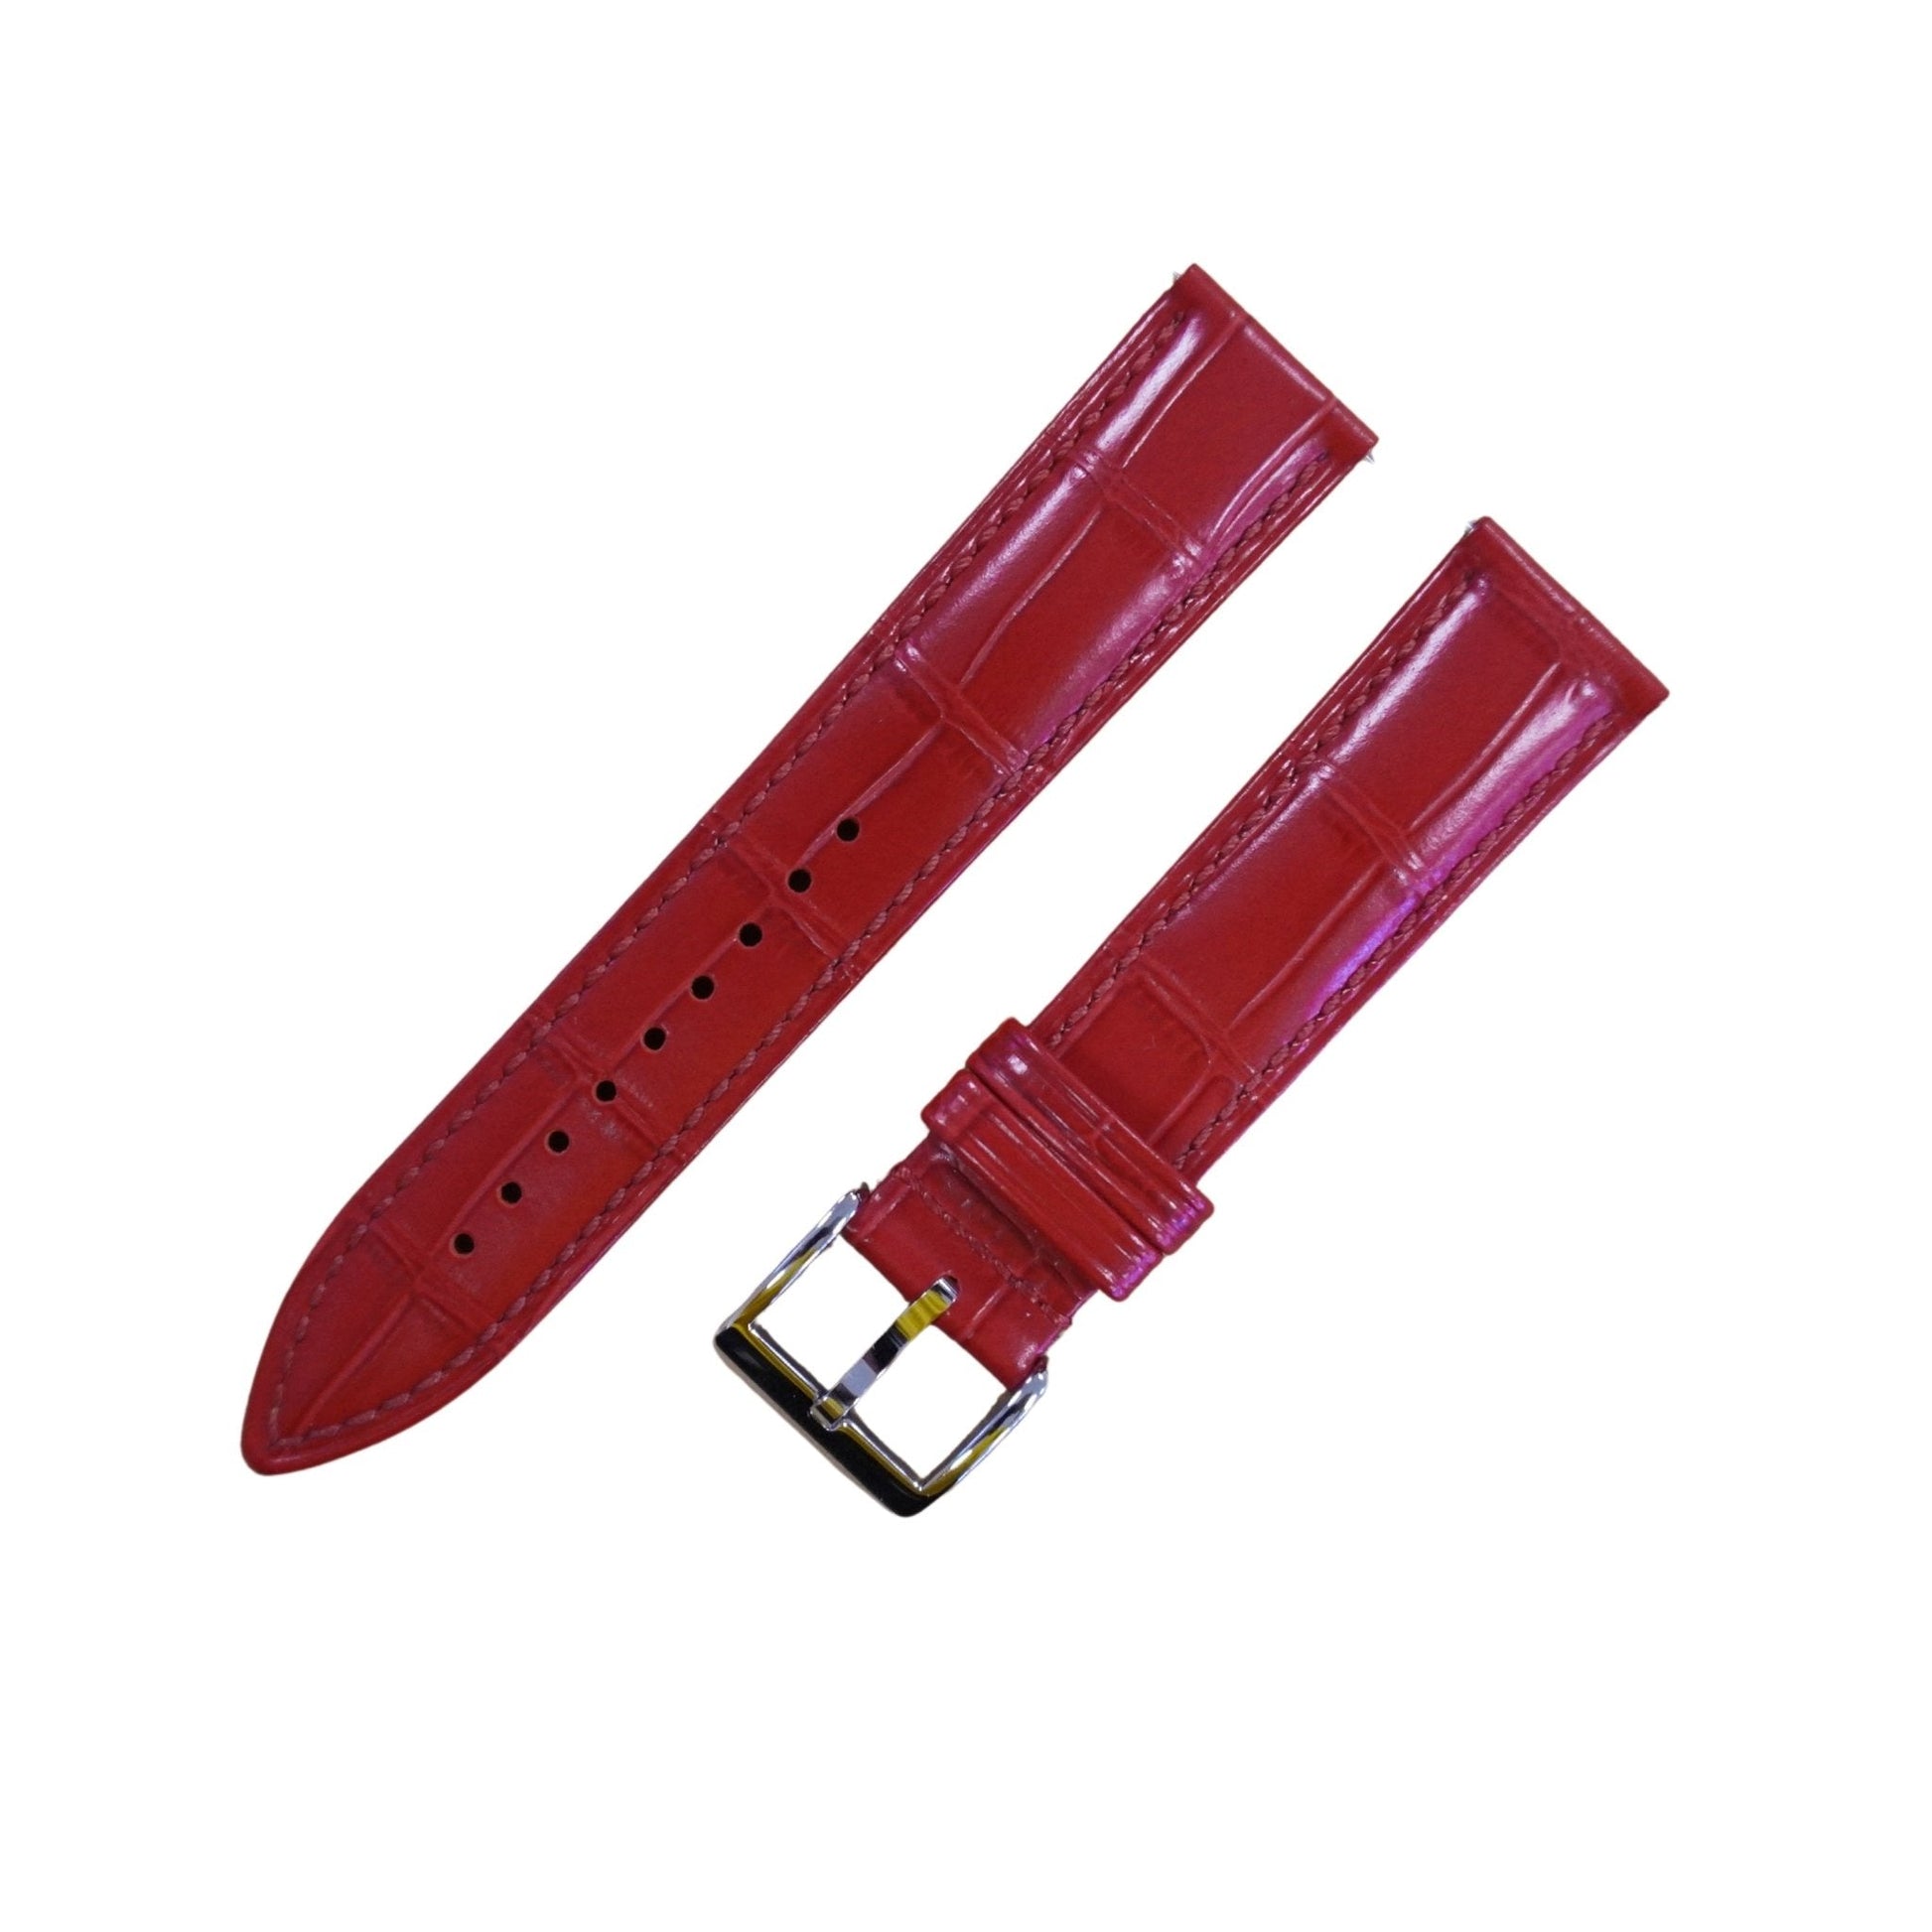 Bracelet montre cuir croco - MONTRE A PAPY - Montre automatique seiko mod 18mmRed